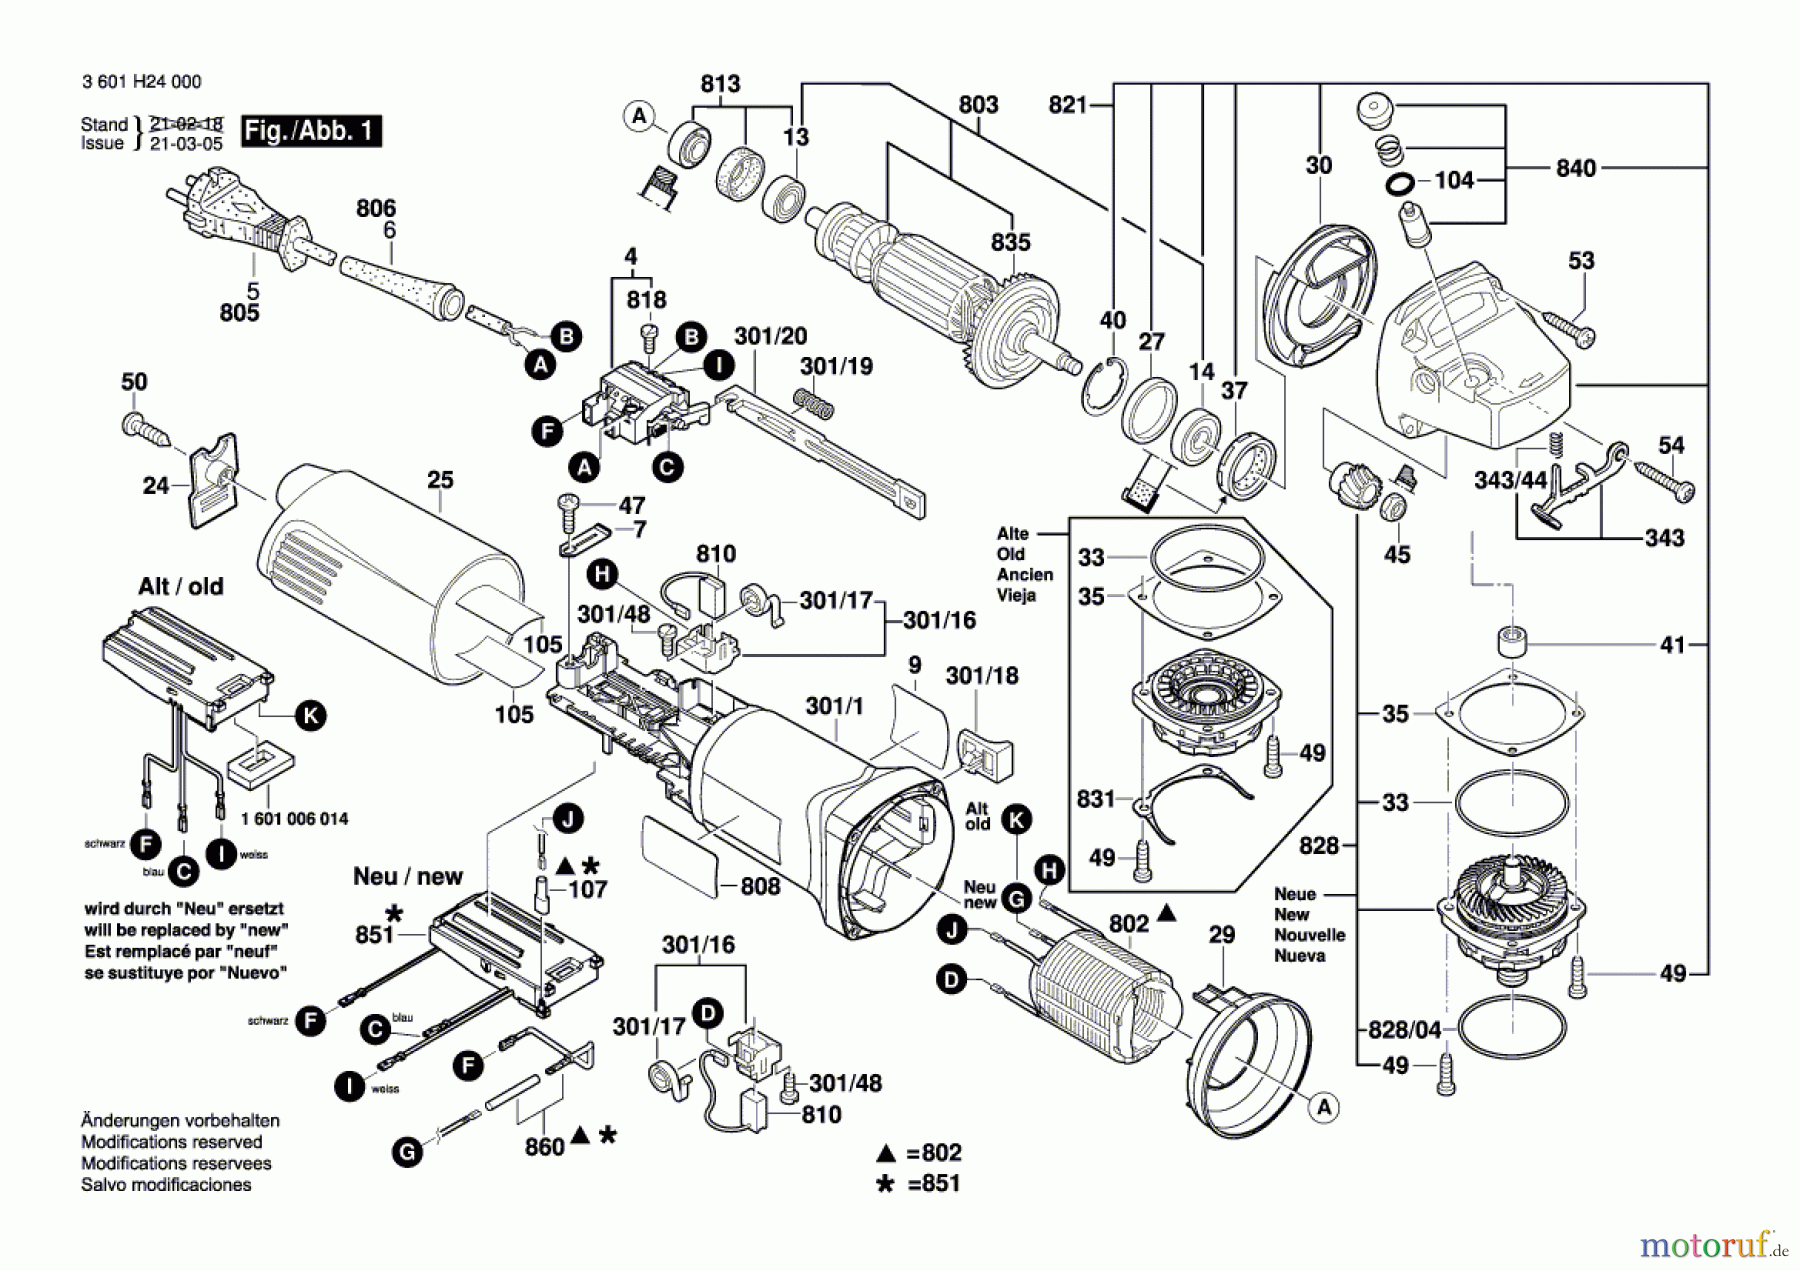  Bosch Werkzeug Winkelschleifer GWS 14-125 CIT Seite 1